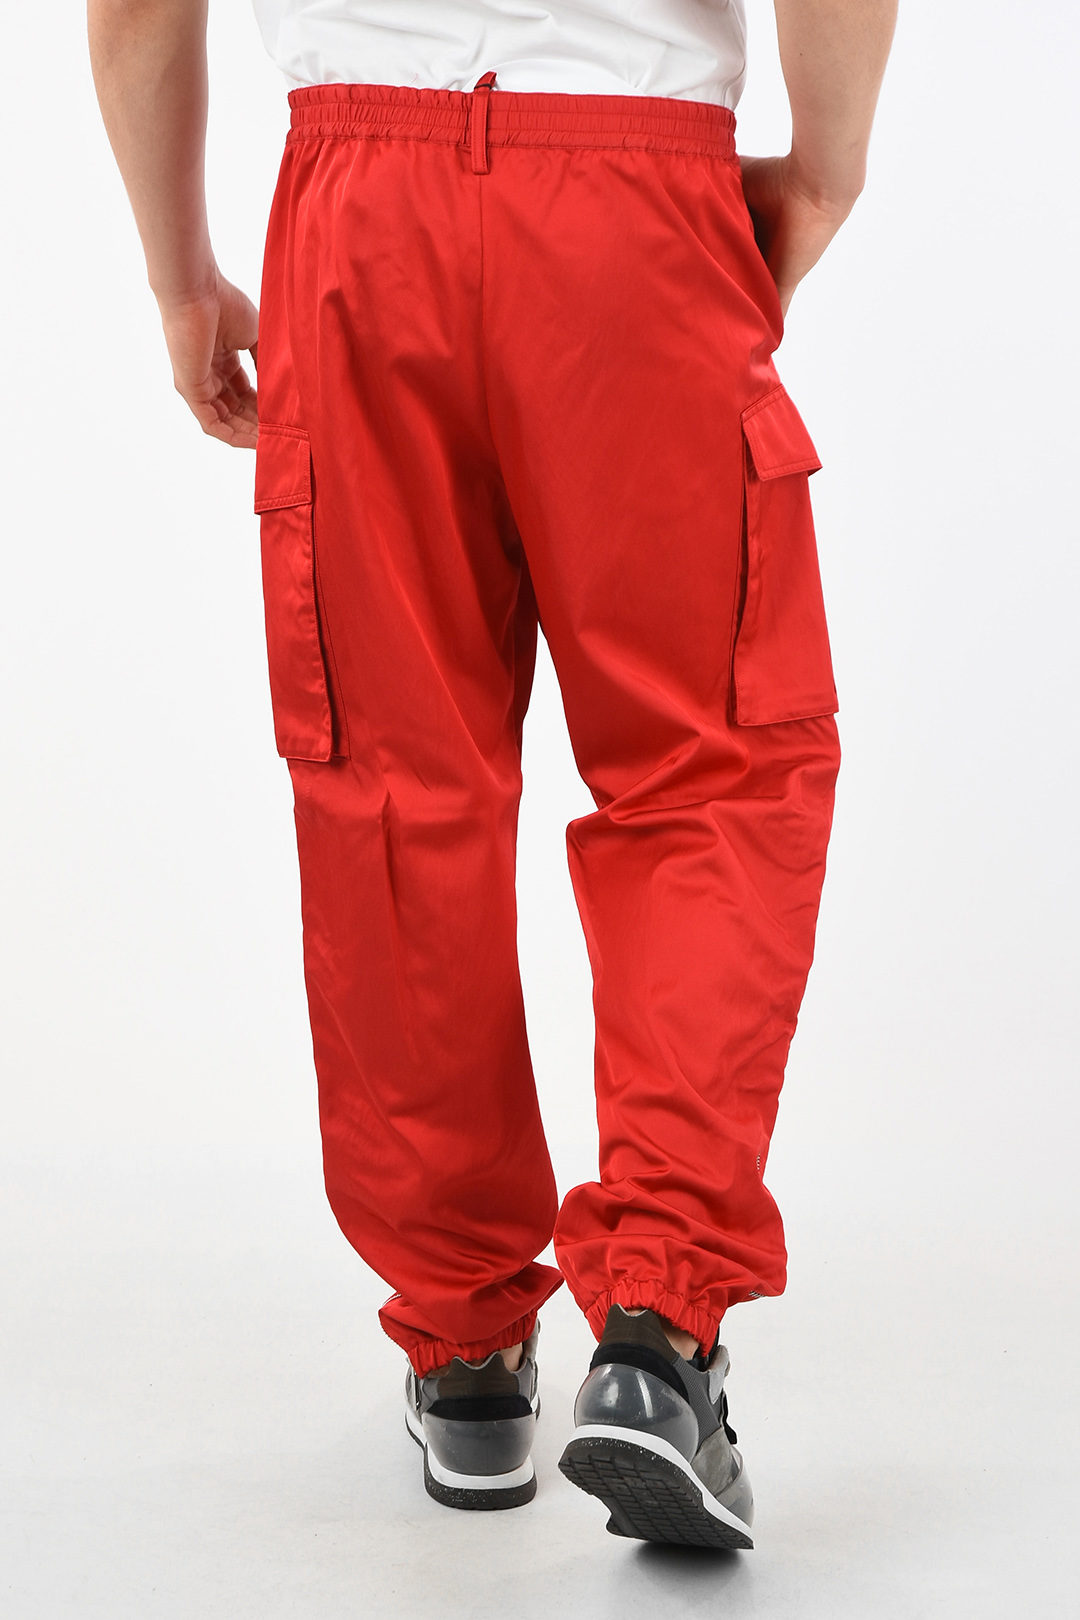 2022 Khaki Cargo Pants Men Drawstring Ankle Length 9 Part Trousers  Streetwear Fashion Cotton Pants Men Casual Work Pants - AliExpress